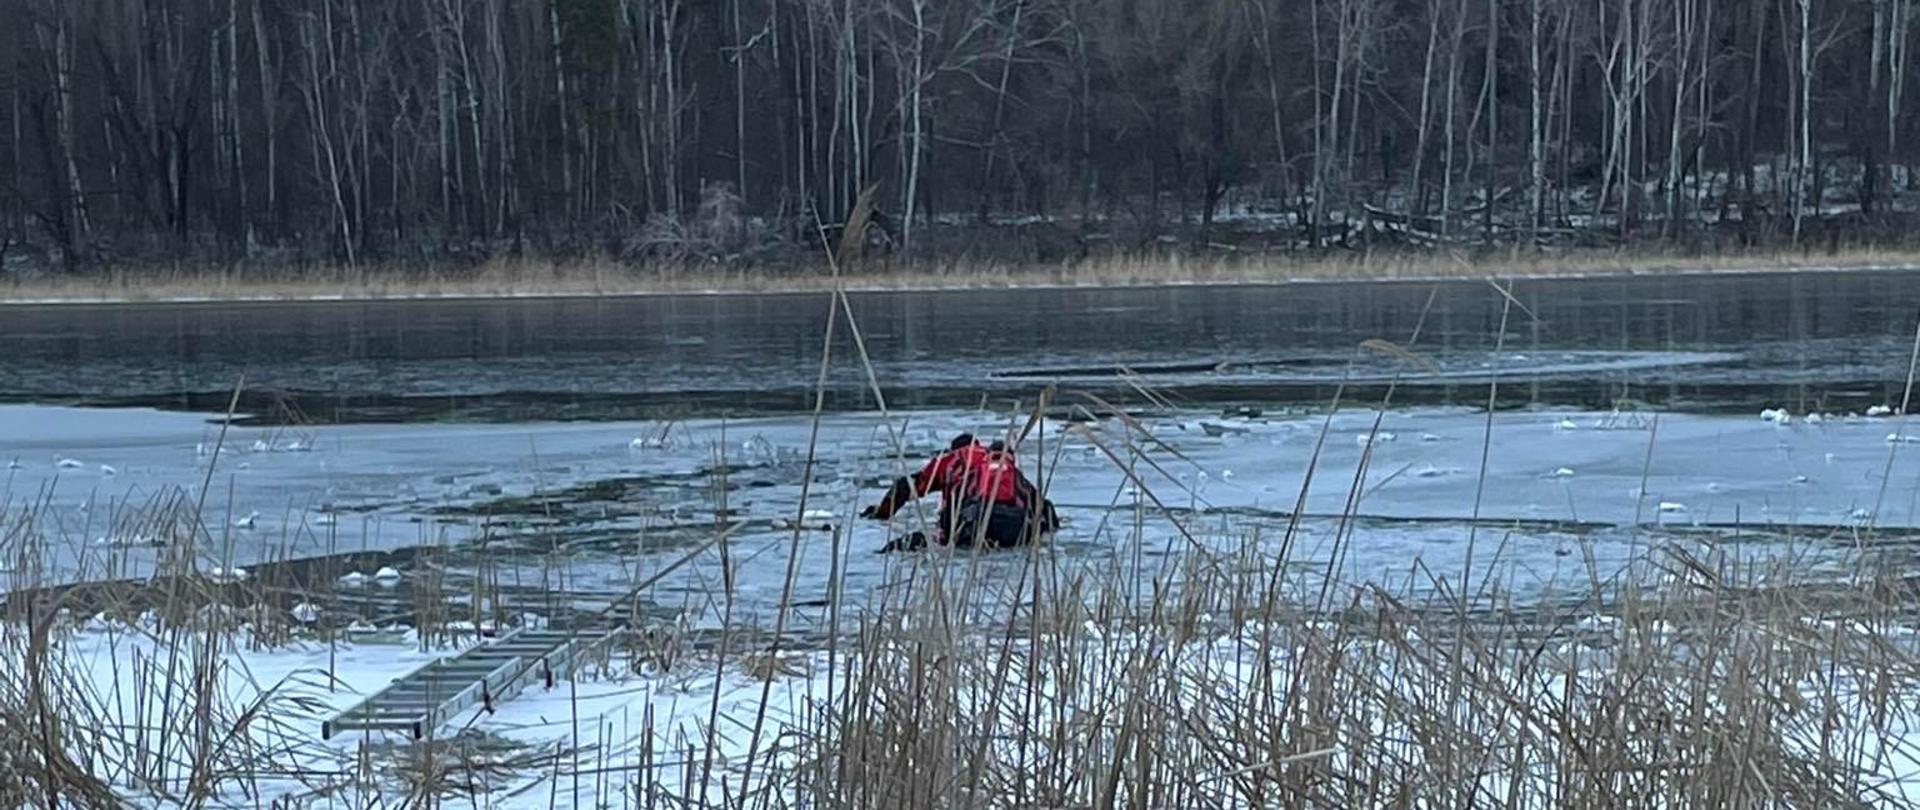 Zdjęcie przedstawia strażaków na desce lodowej na zbiorniku wodnym. Strażacy na lodzie ratują psa i sarnę pod którymi zarwał się lód. 